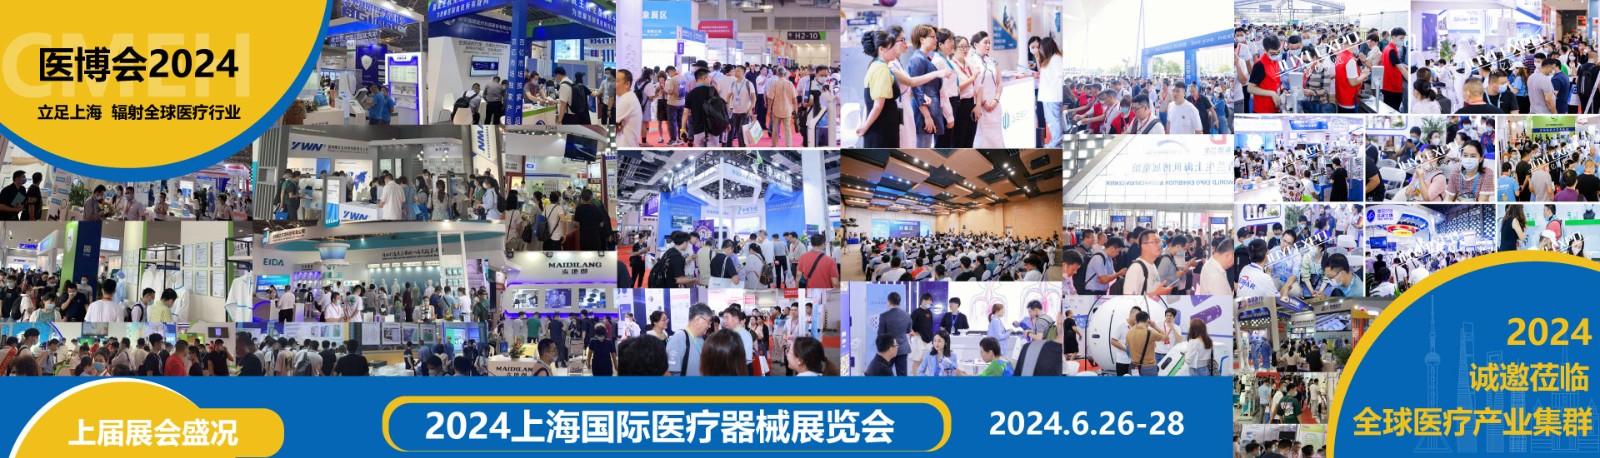 上海国际医疗器械展览会：各地区展商申请、分配展位